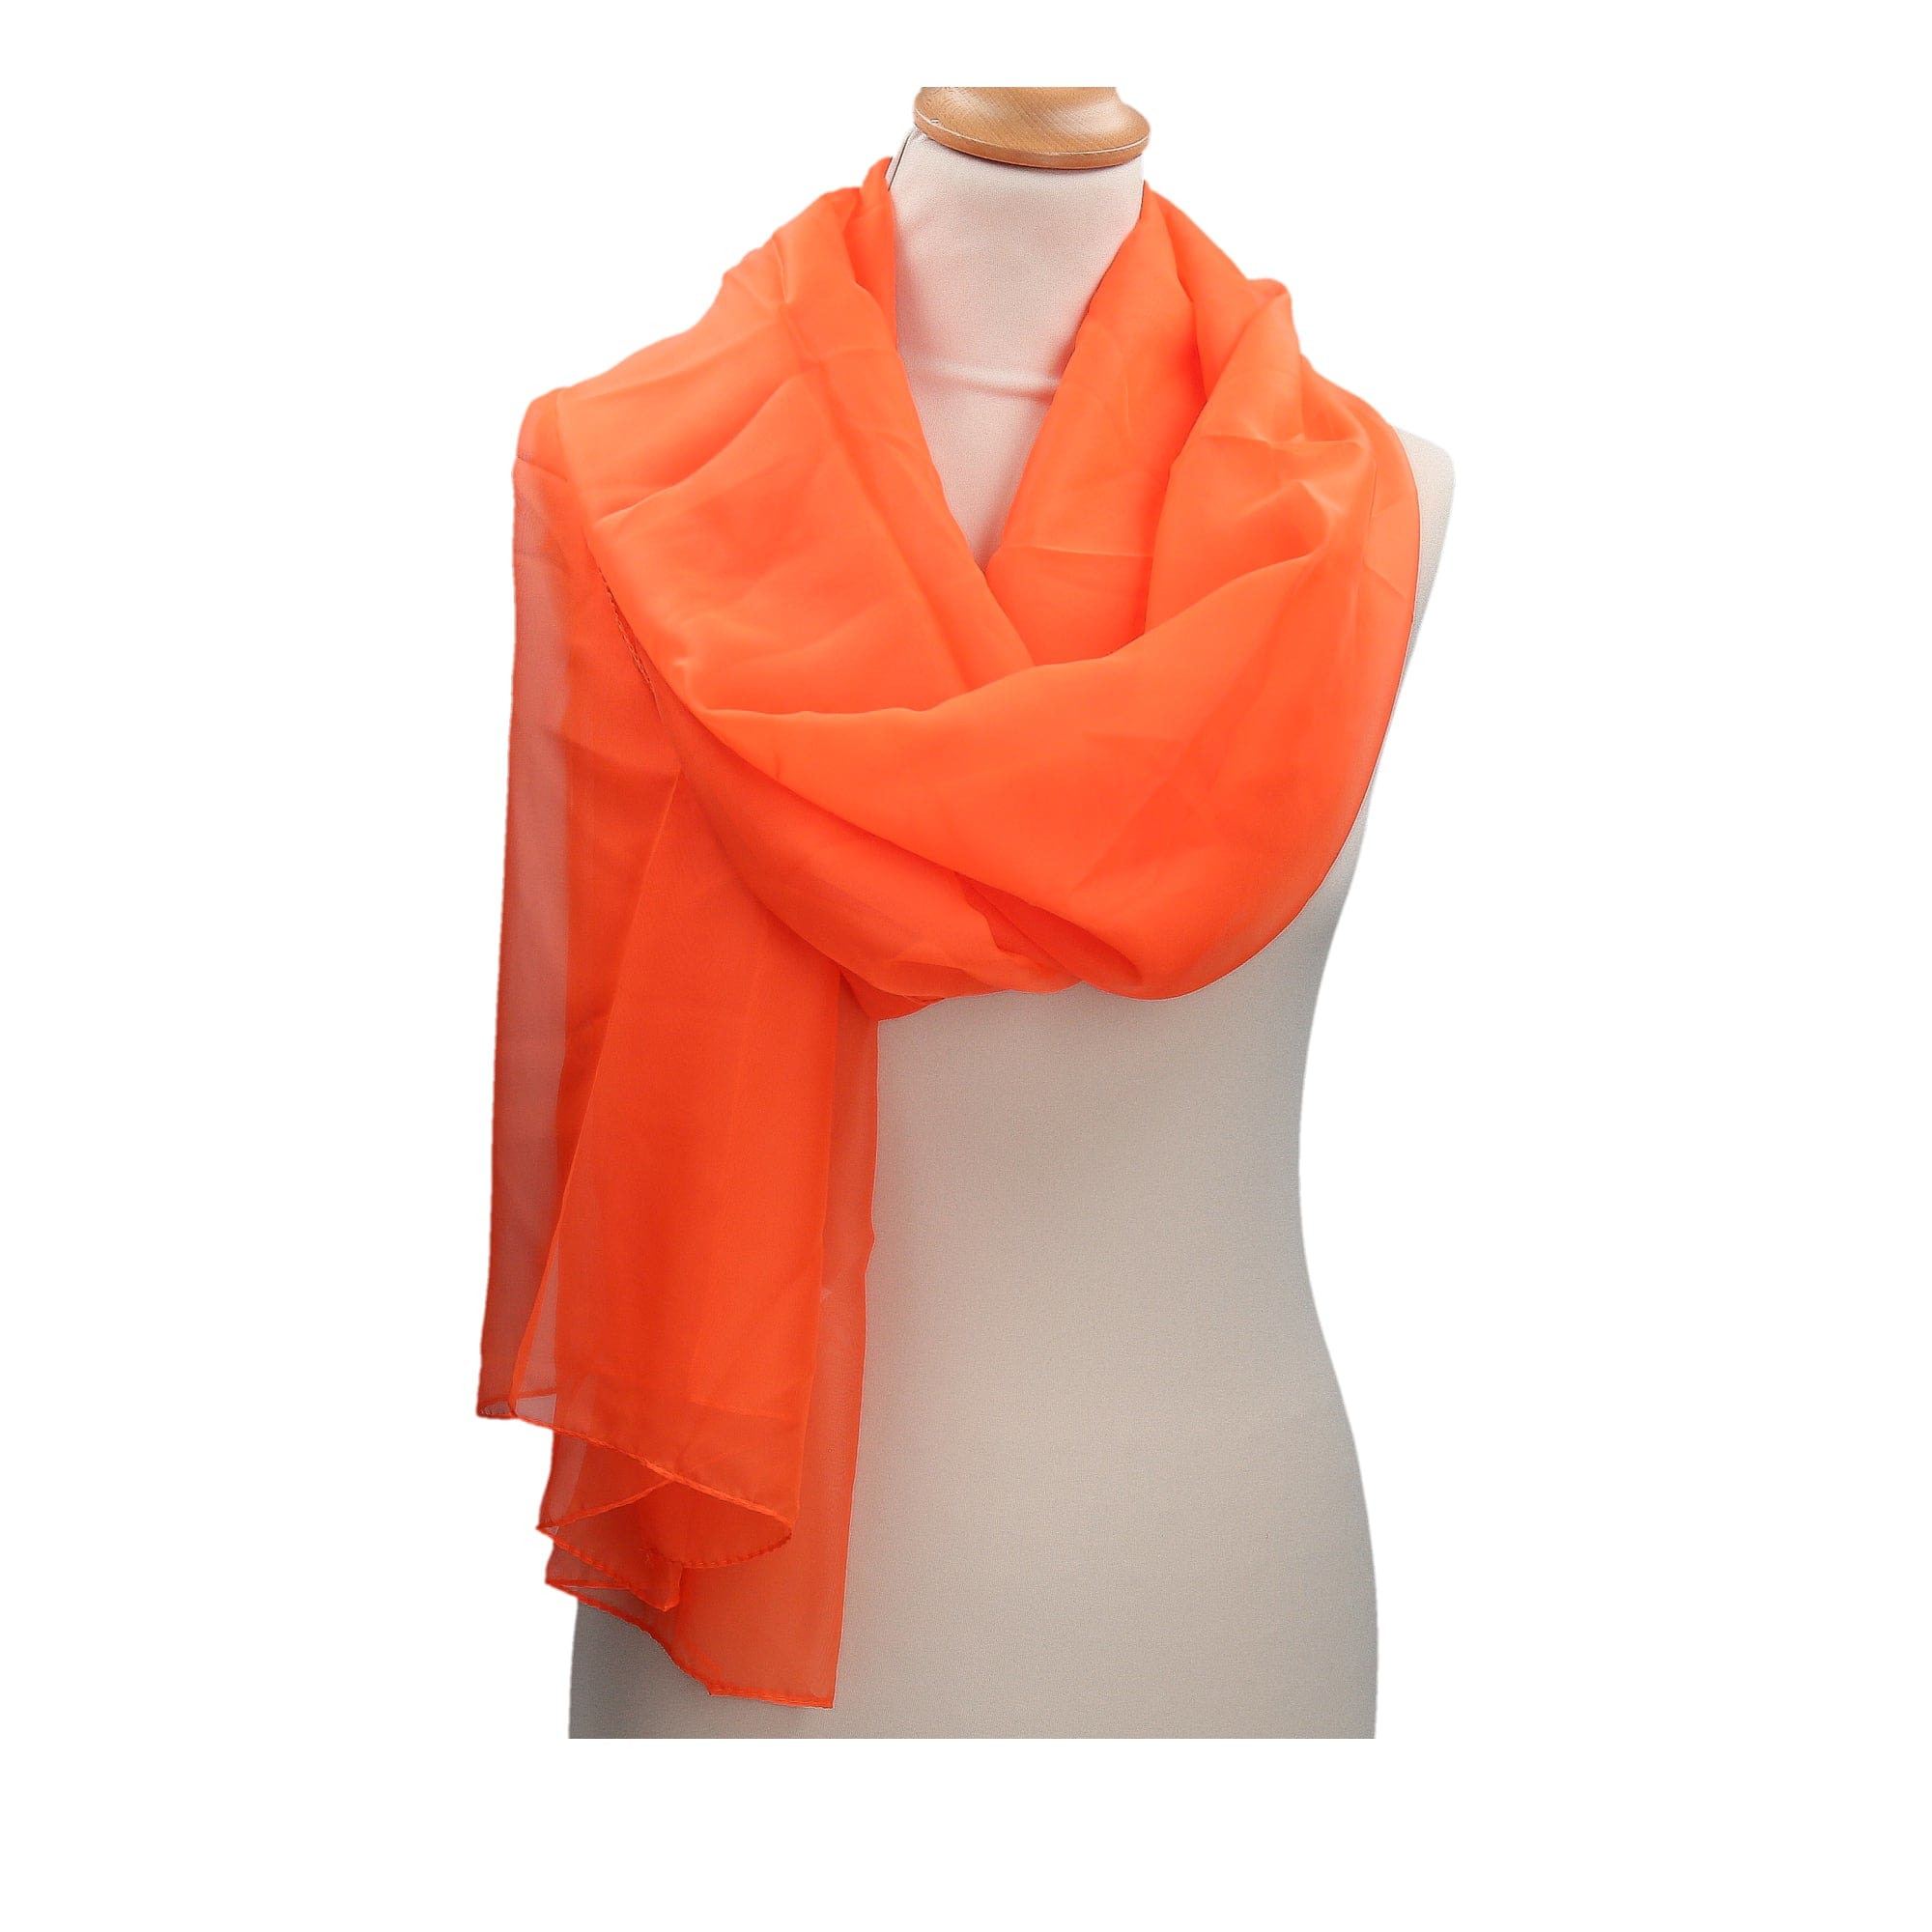 shawl Arenberg - Orange - shawl